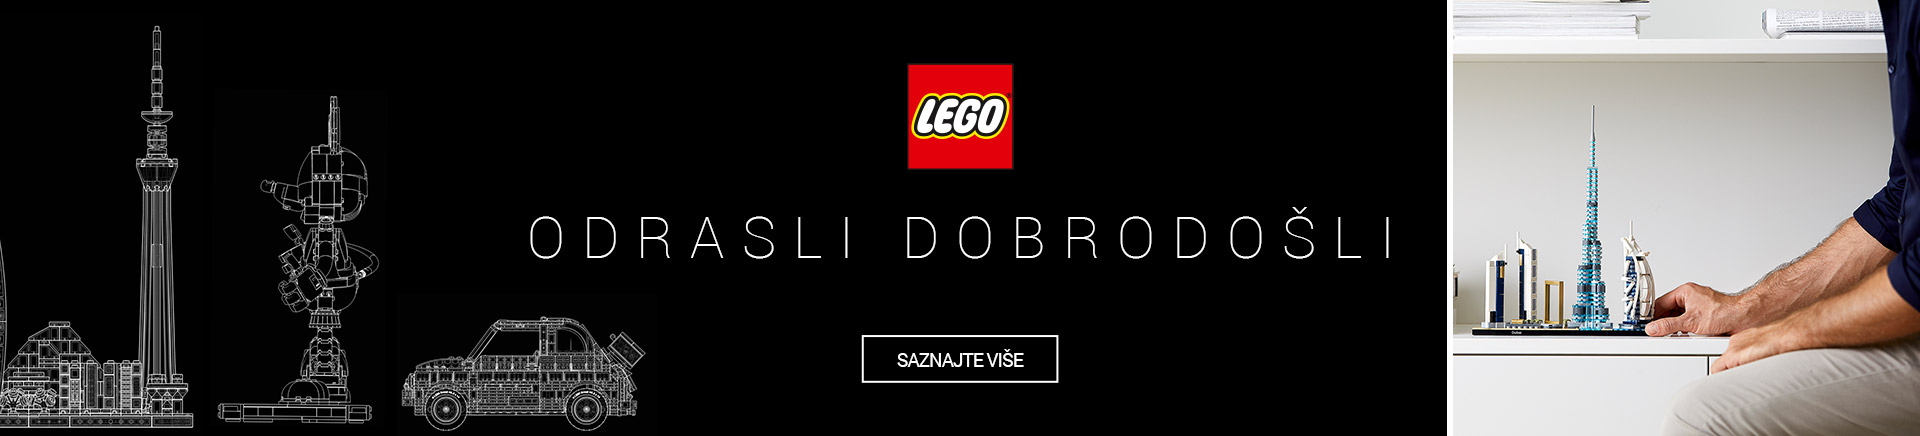 LEGO-odrasli-dobrodosli-DESKTOP-1200-X-436.jpg